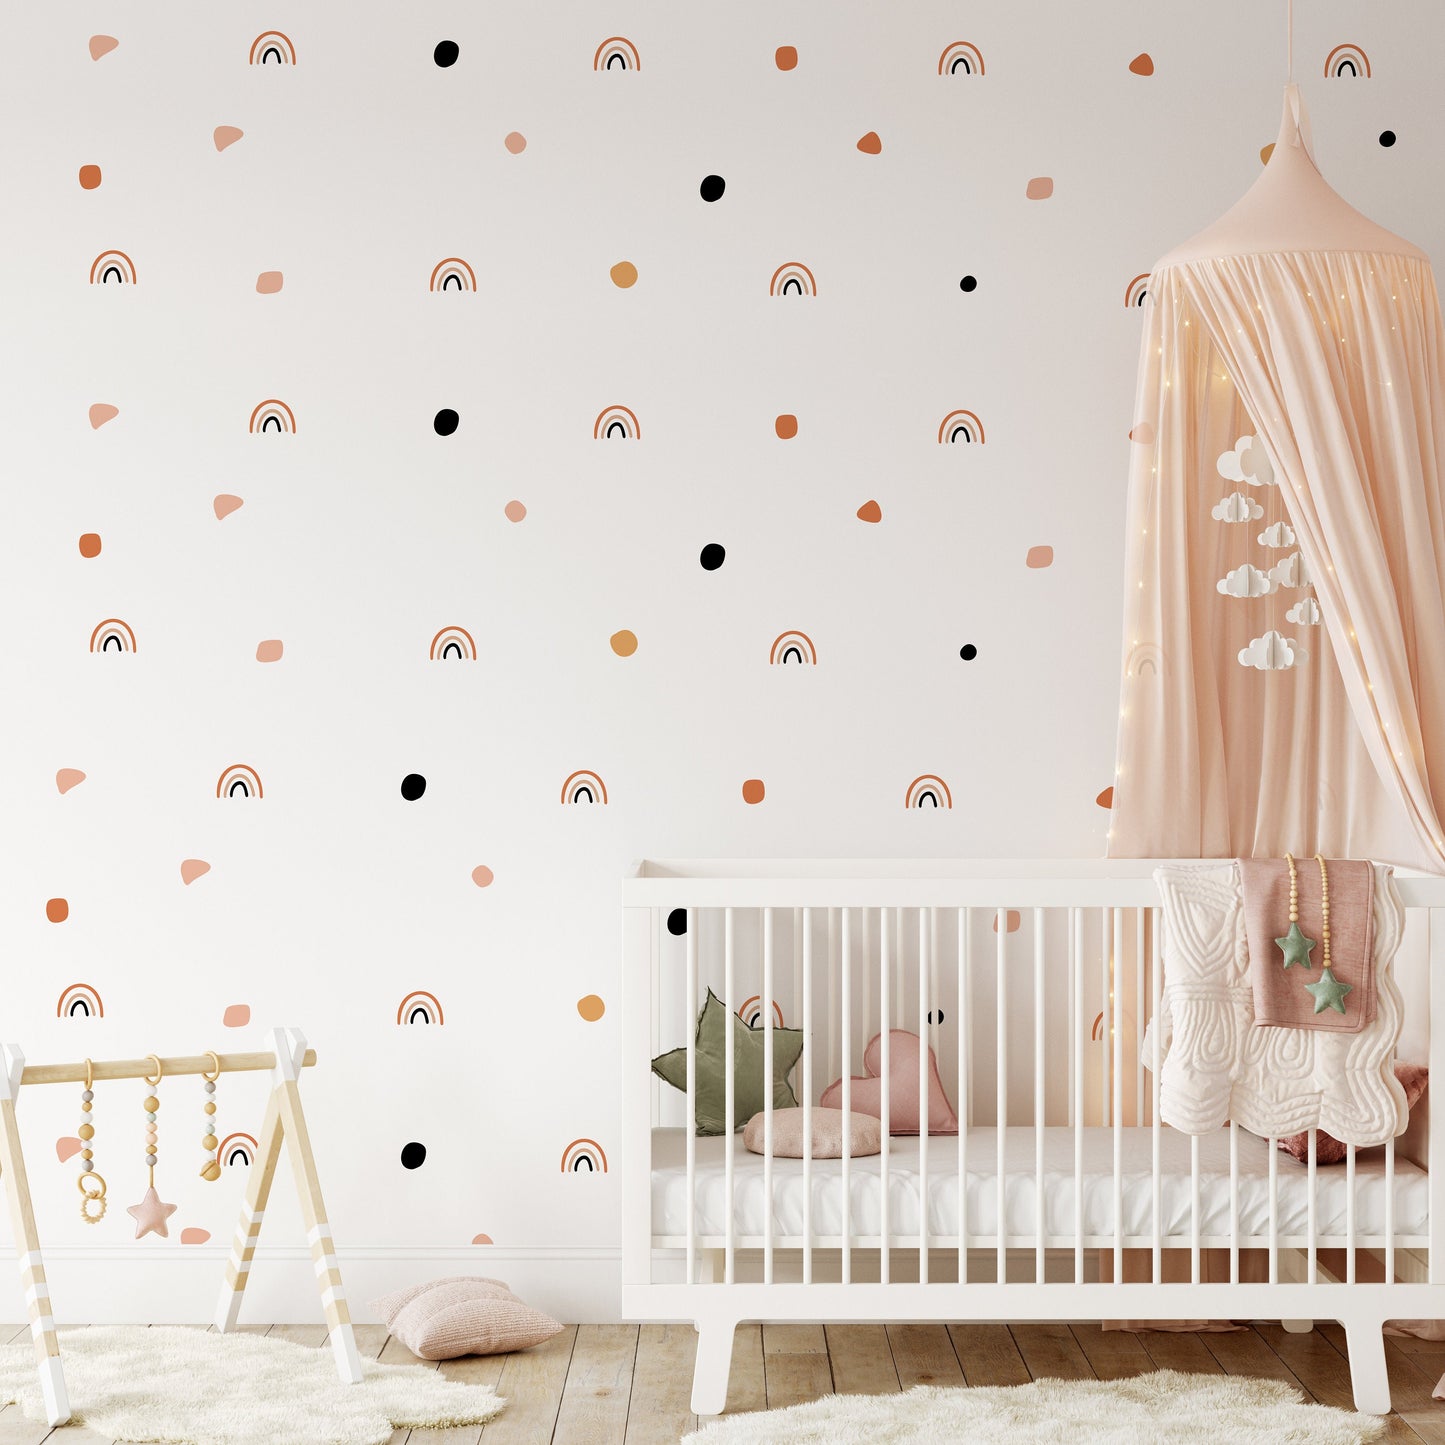 Boho Rainbow Polka Dots Wall Stickers Chic Decor For Kids Rooms Nursery Boho Wall Art Vinyl